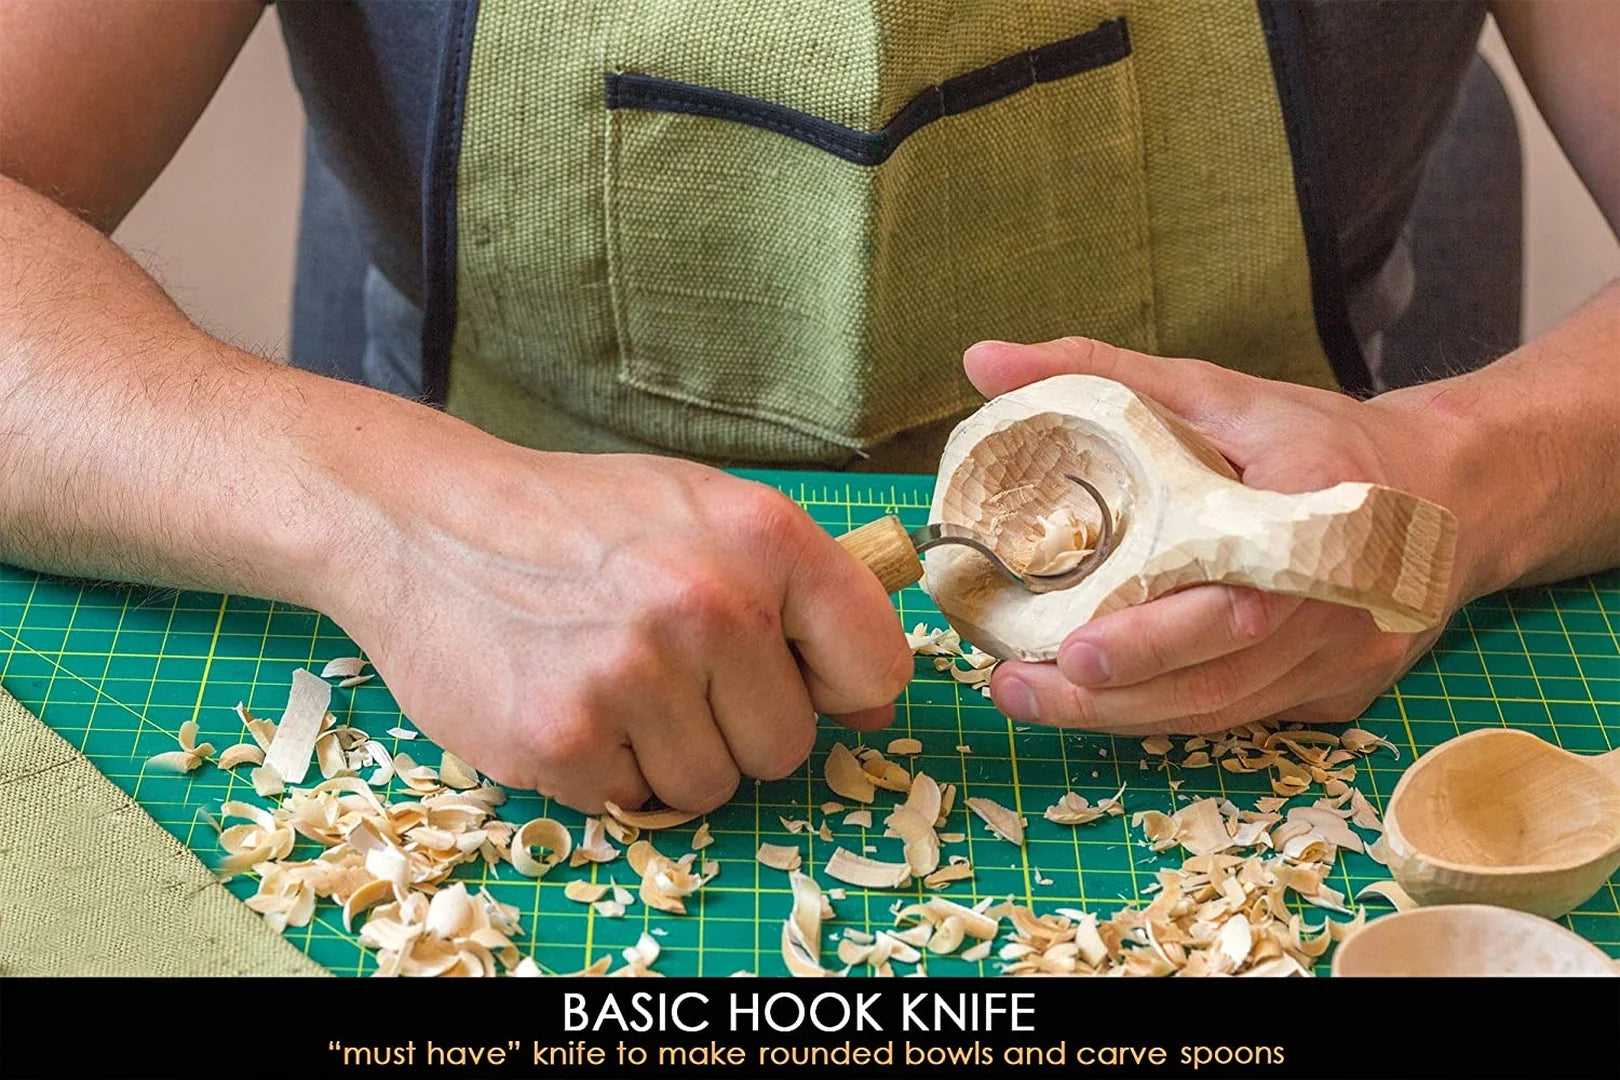 Beavercraft Wood Carving Kit S16, Whittling Wood Knives Kit, Widdling Kit  for Beginners, Wood Carving Knife Set Wood Blocks Blank Whittling Knives Kit